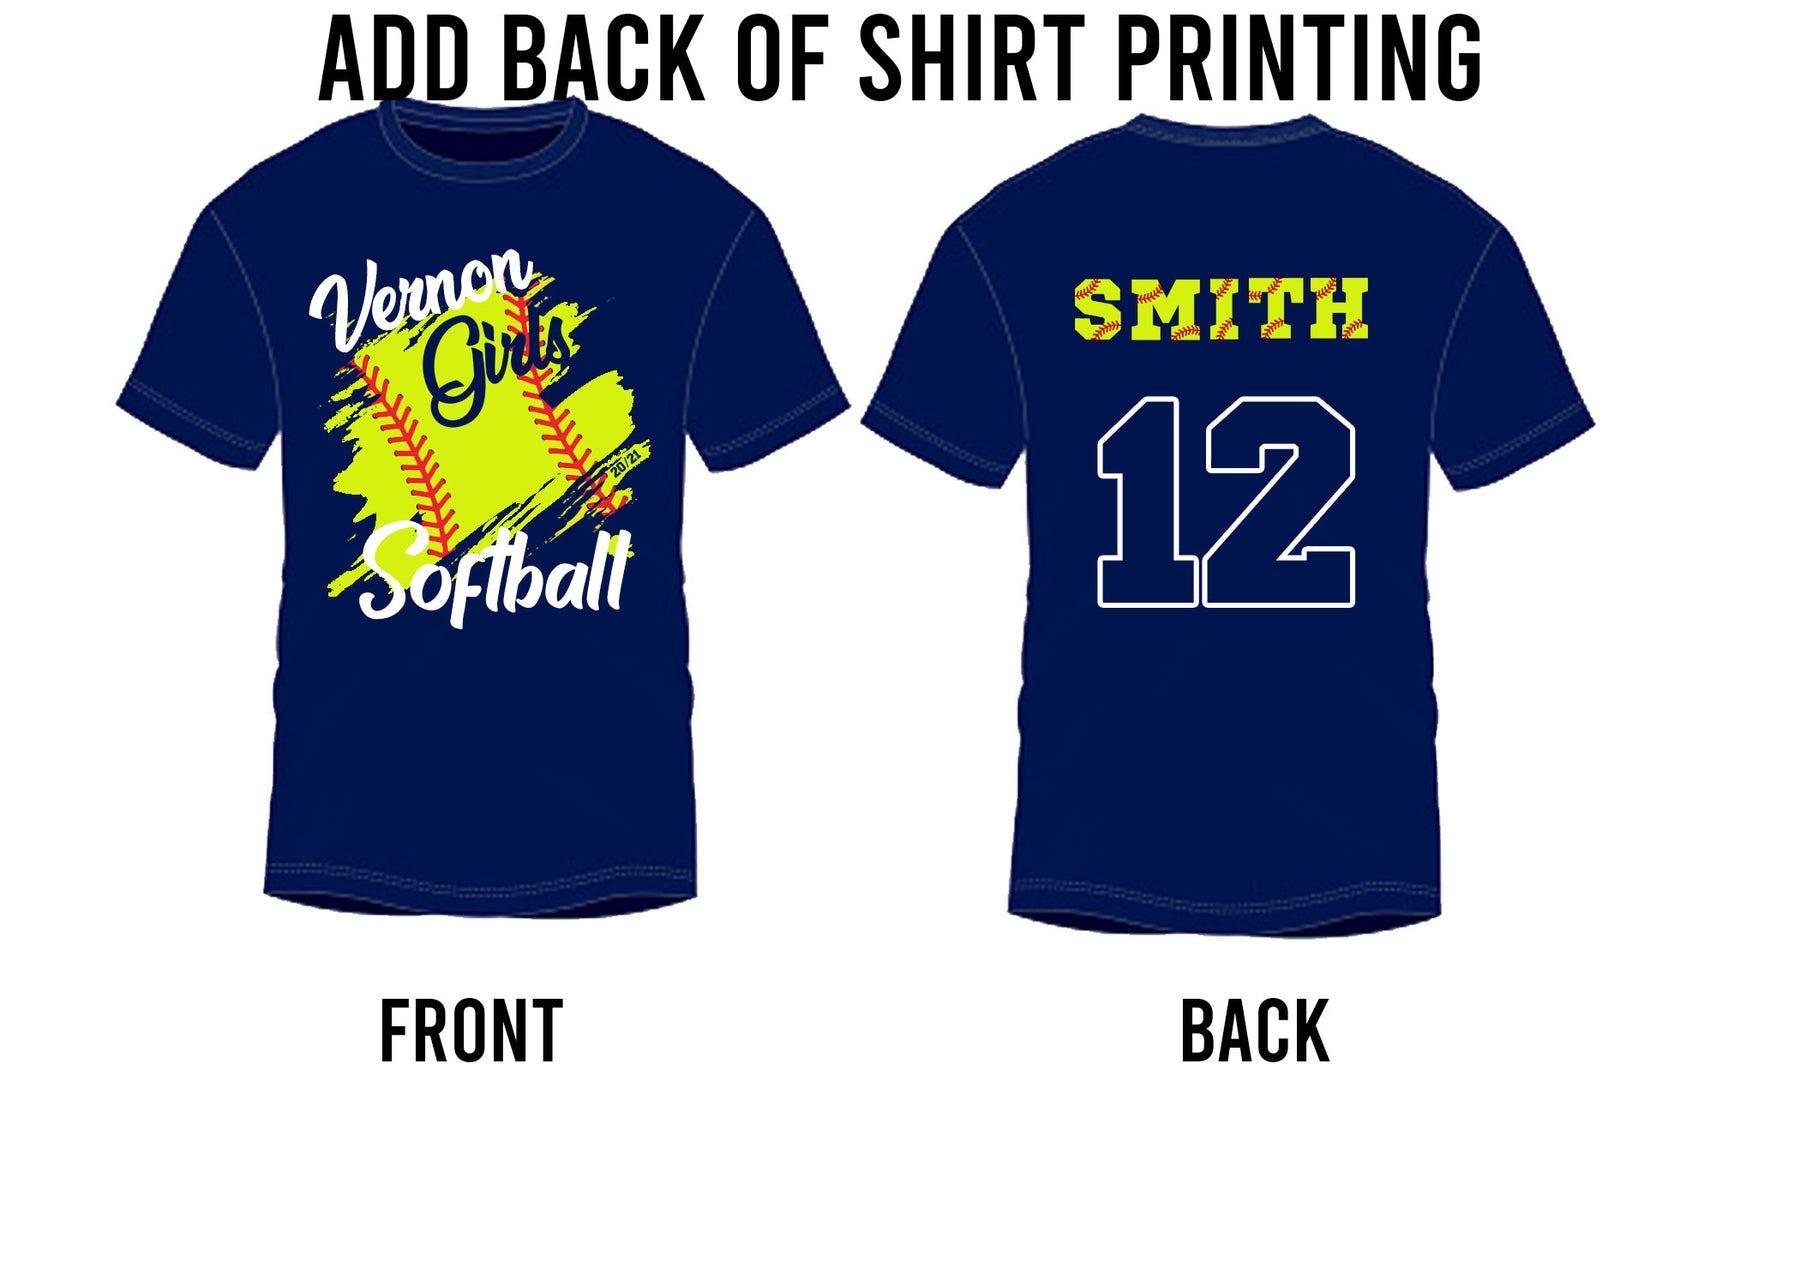 Vernon Girls Softball T-shirt